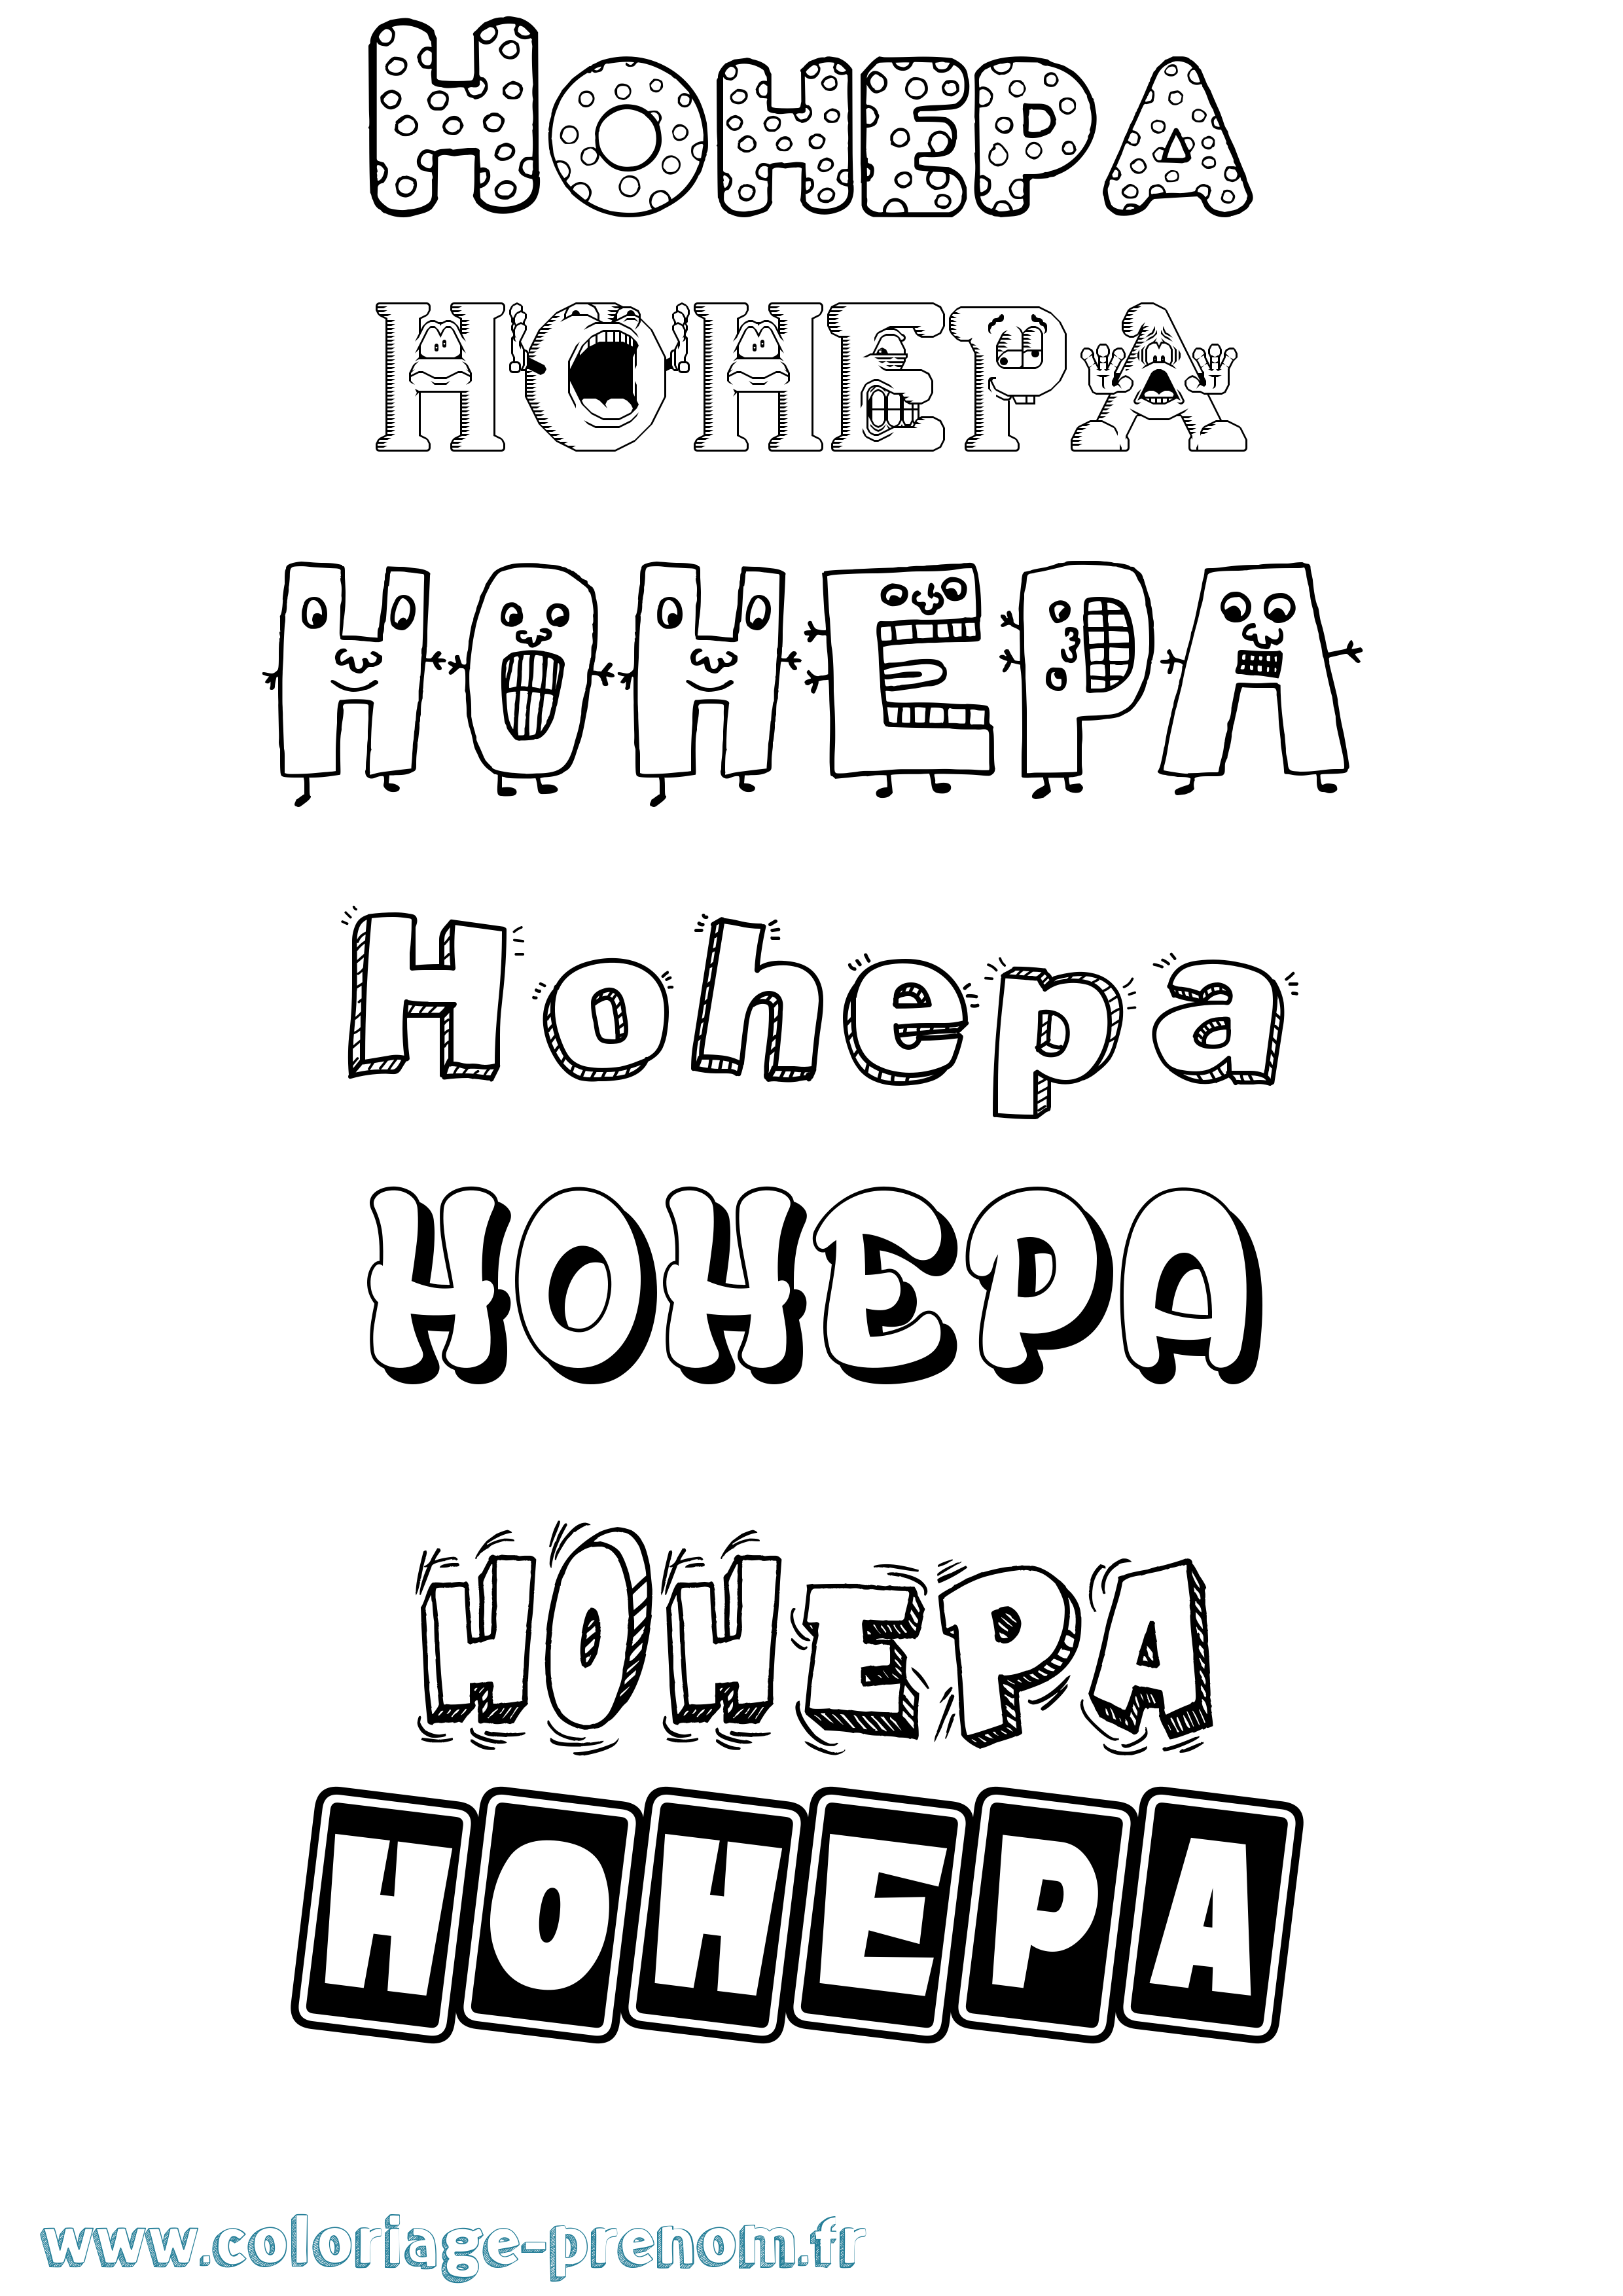 Coloriage prénom Hohepa Fun